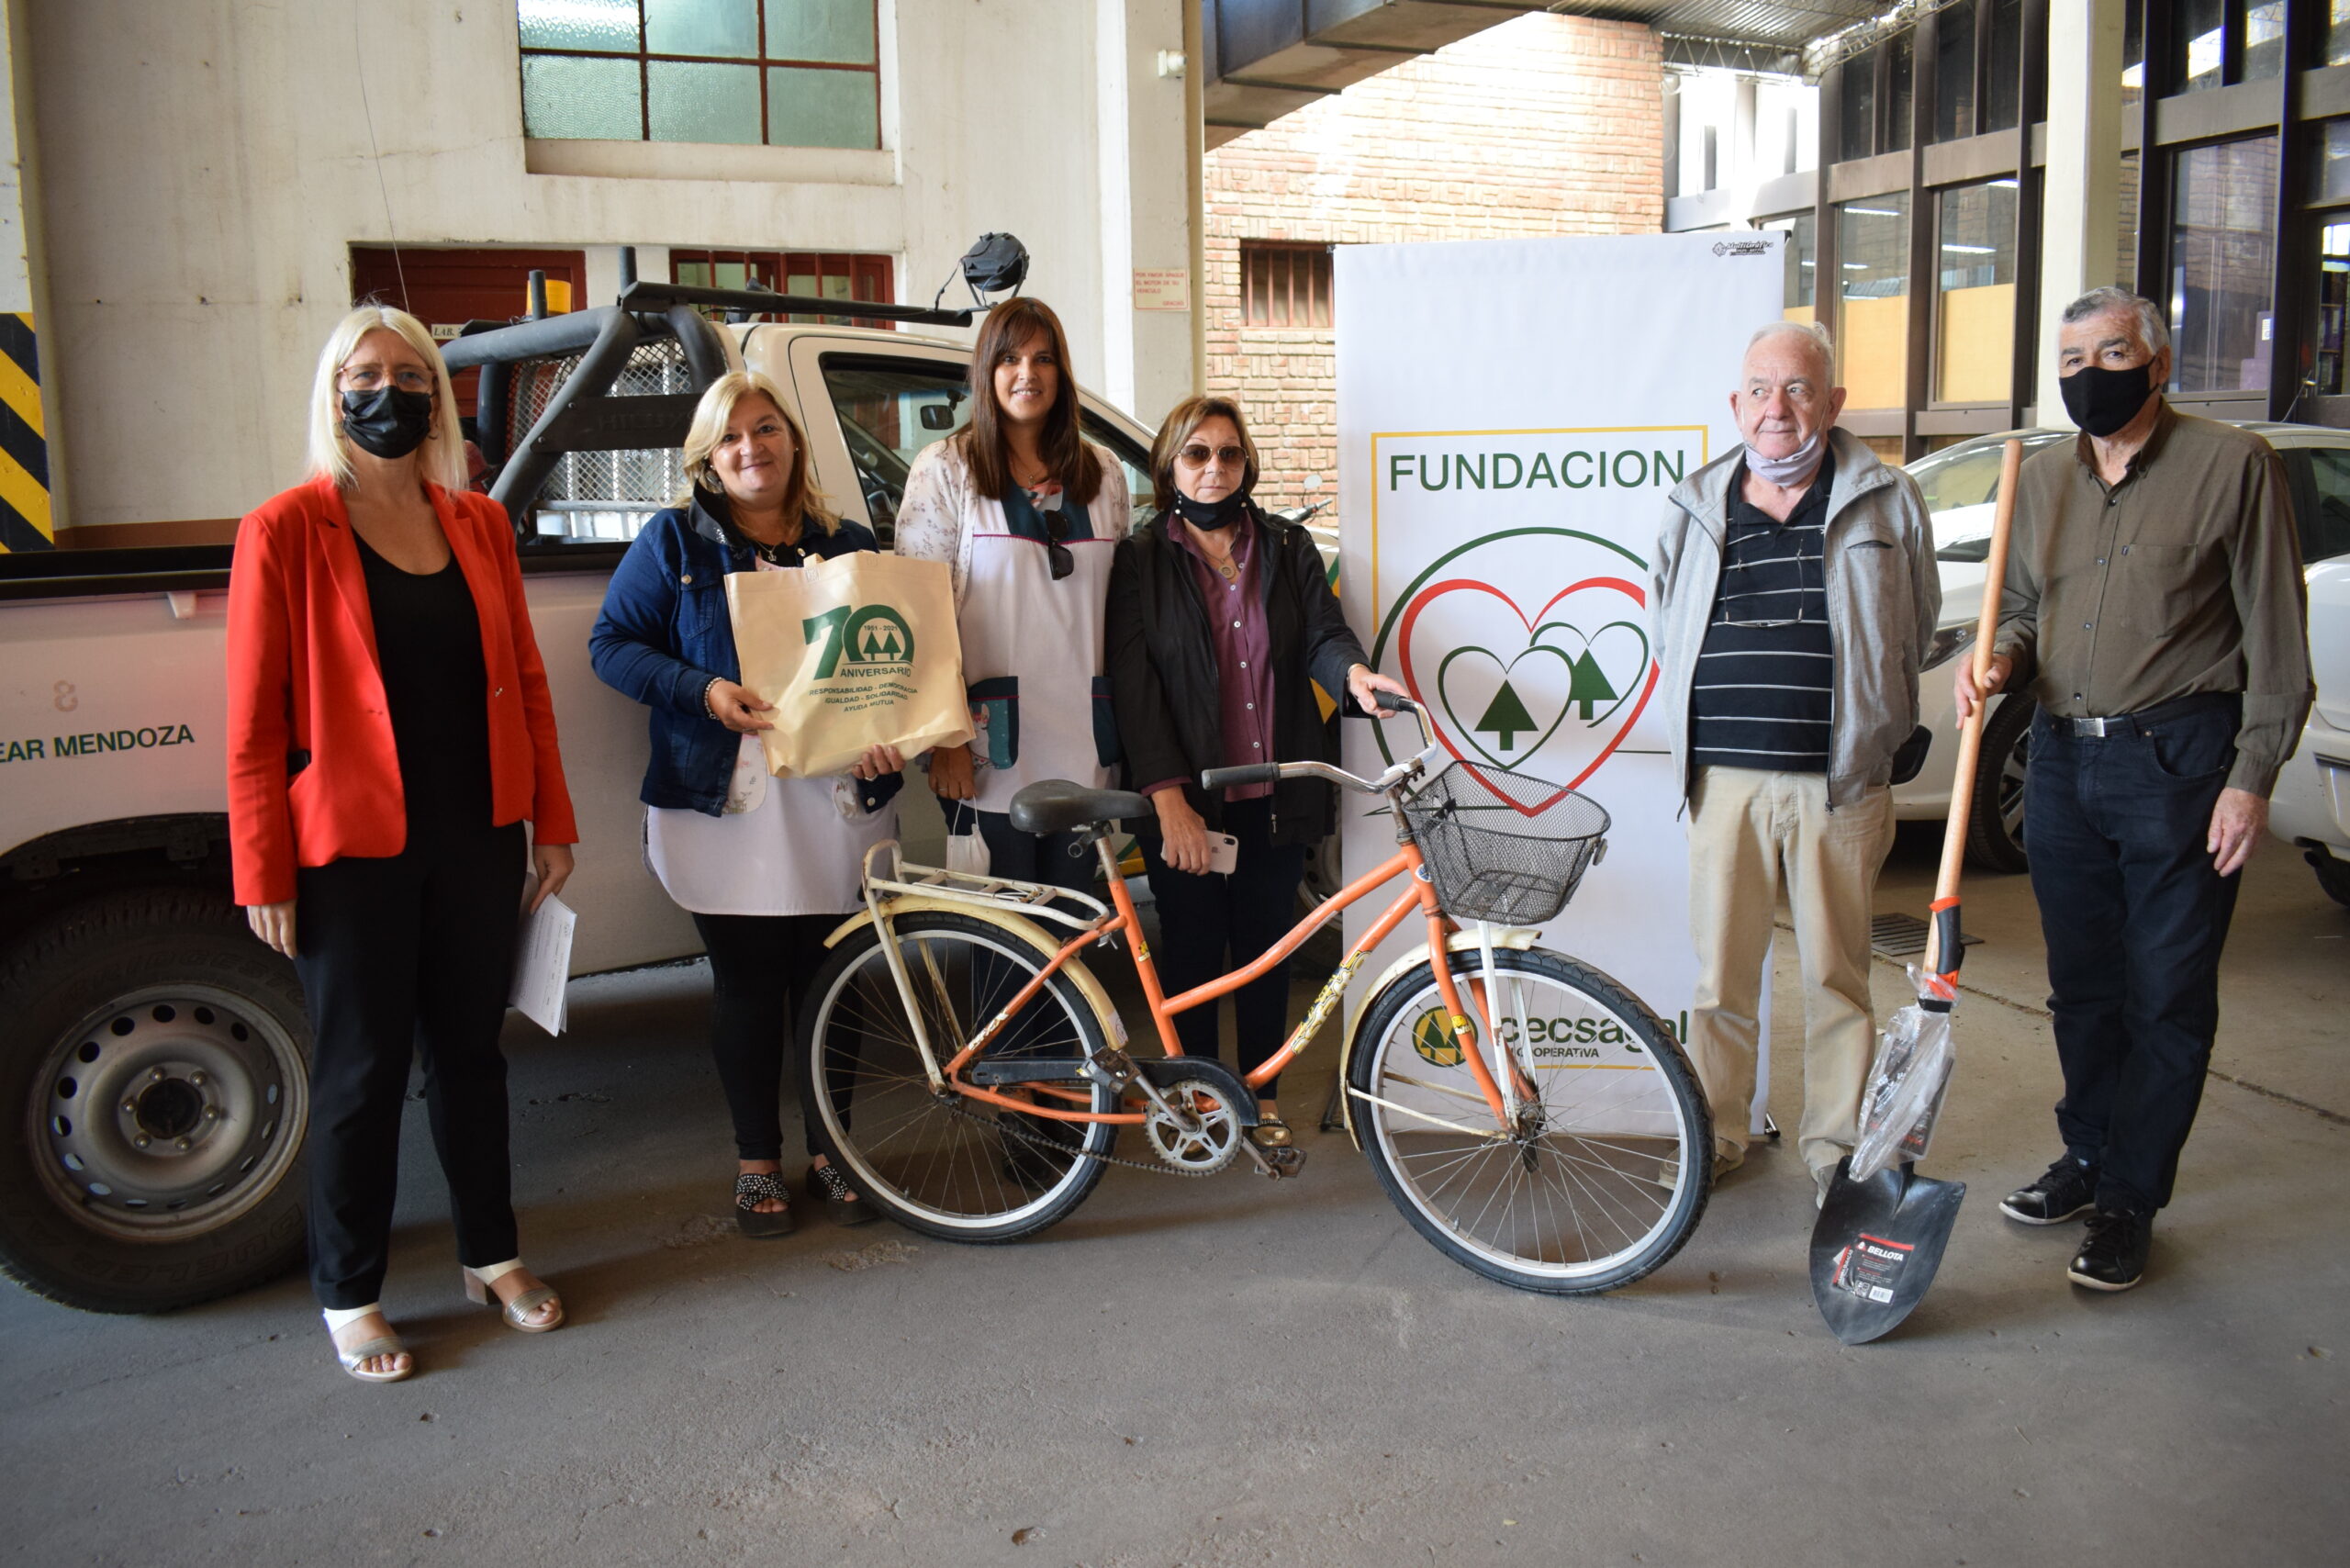 Fundación Cecsagal donó herramientas y una bicicleta a la Escuela Alas Argentinas